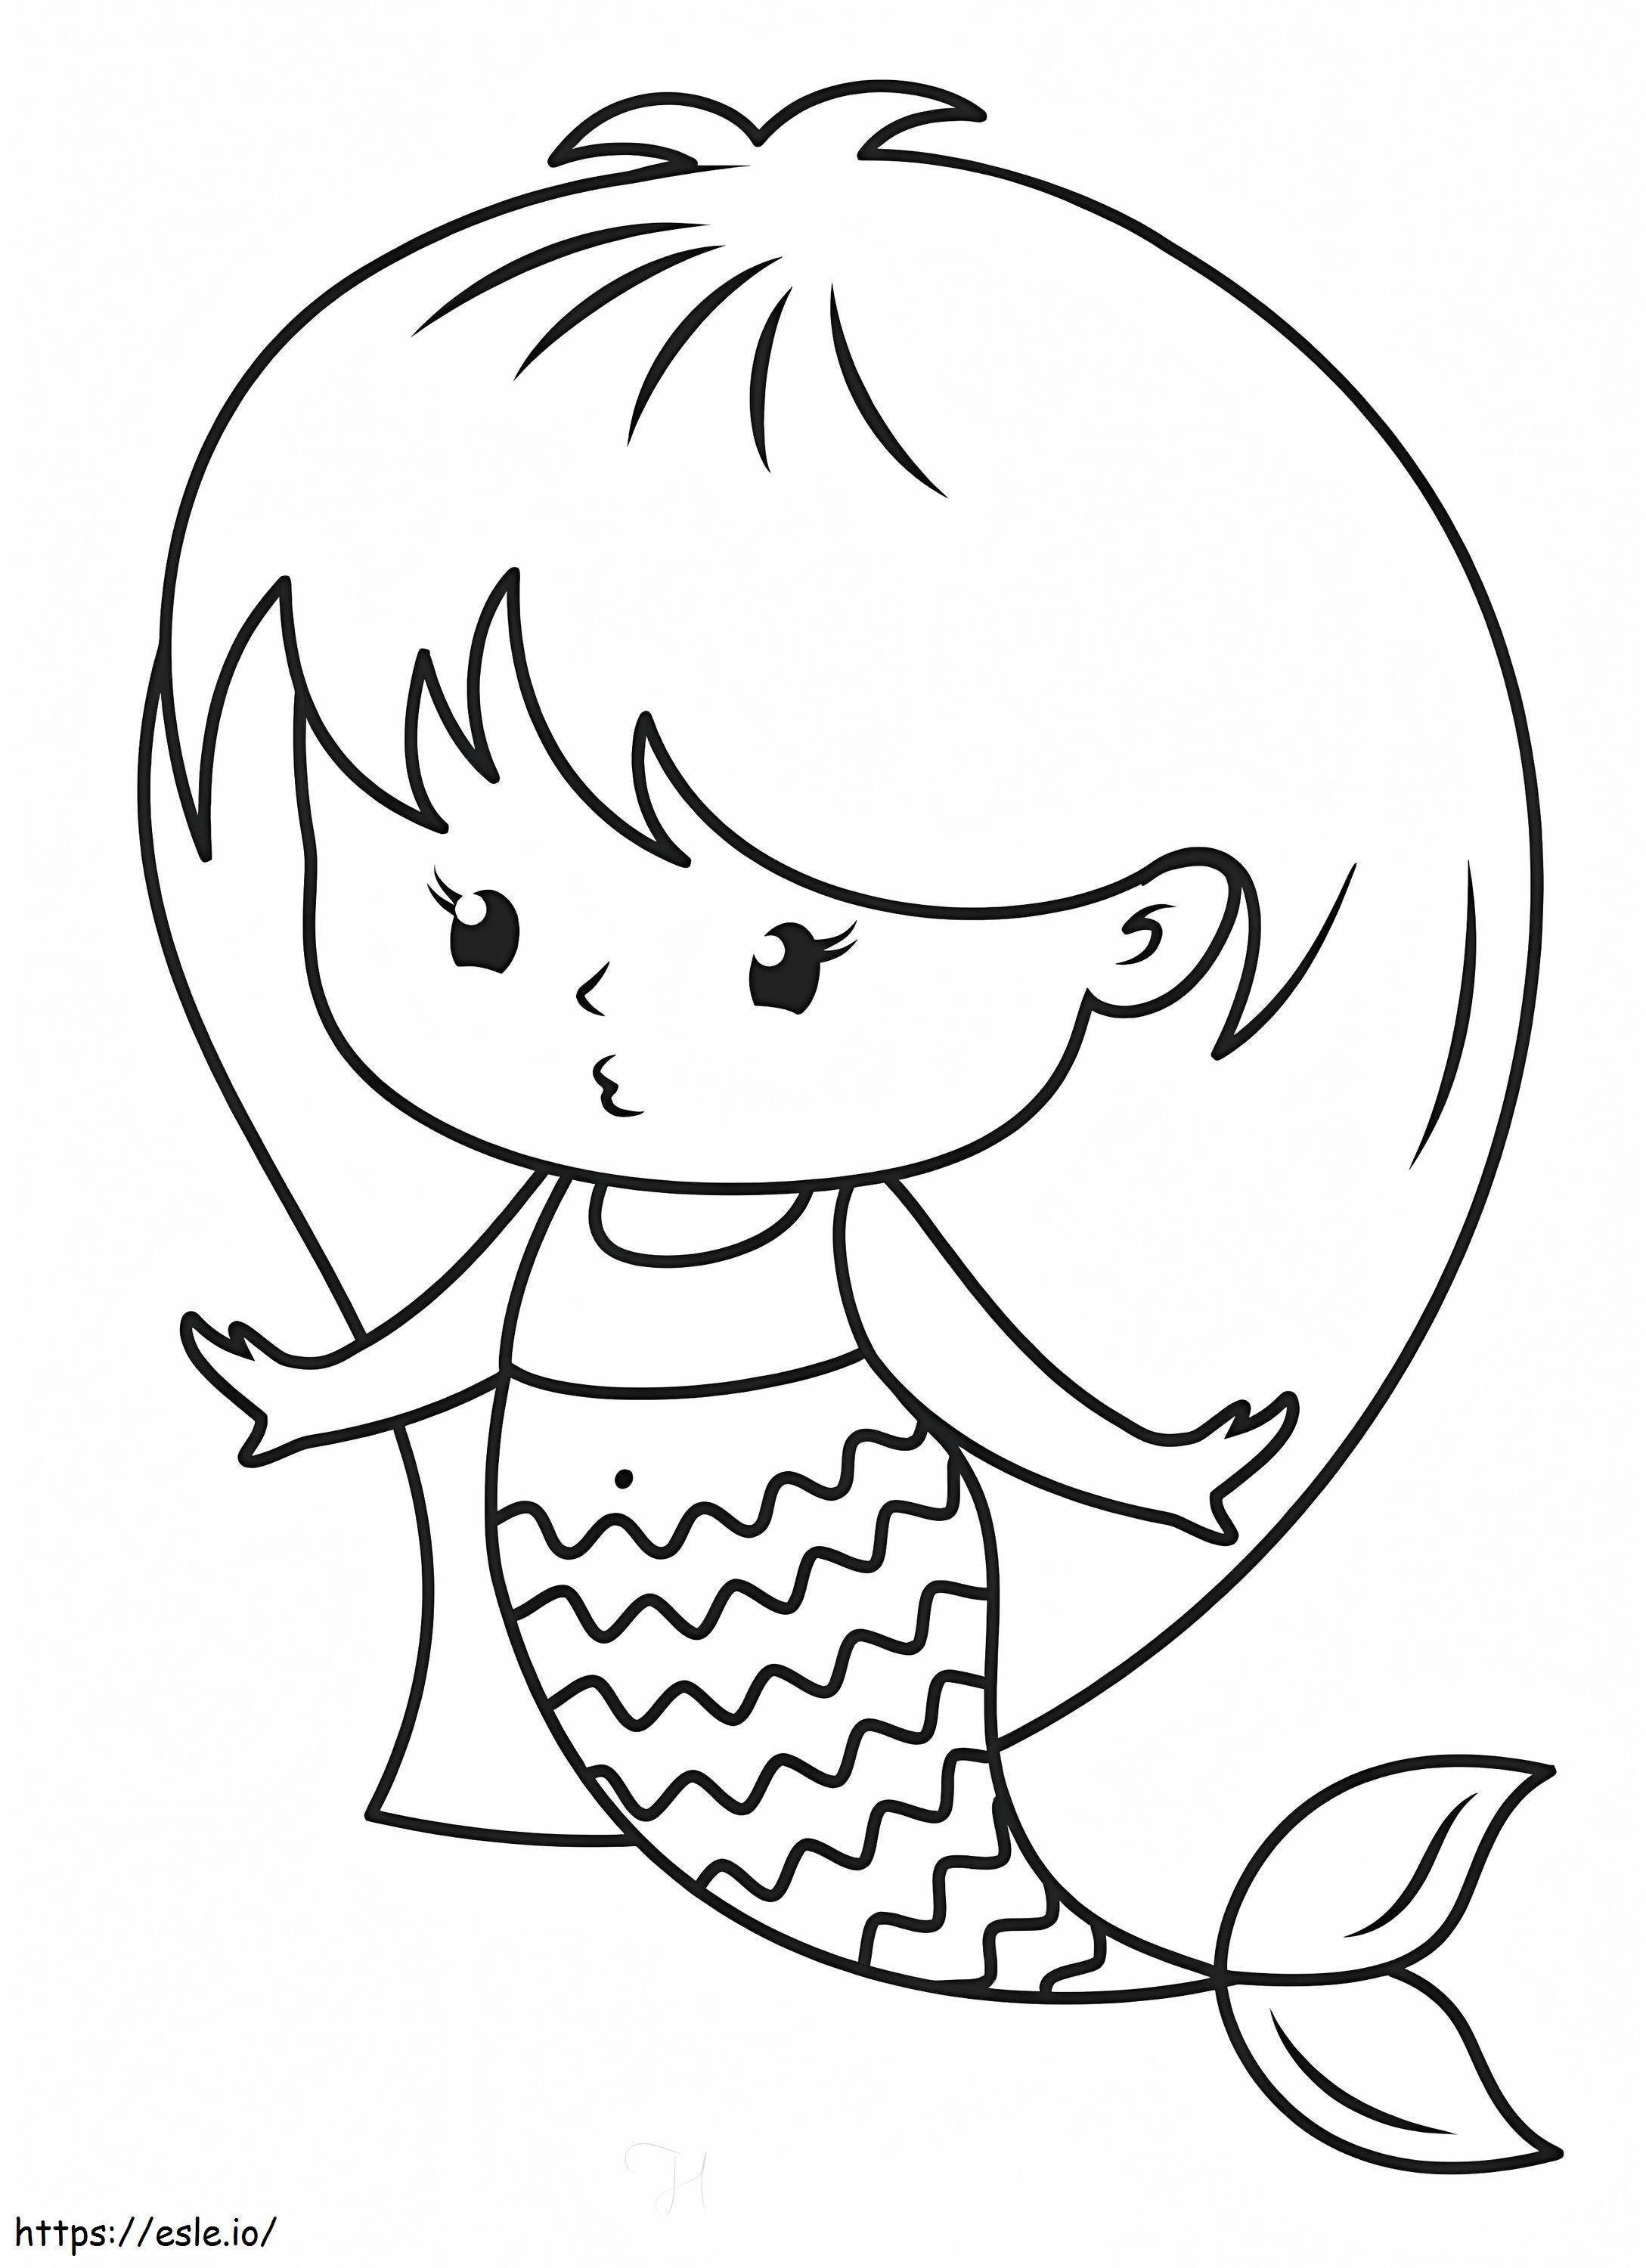 Kawaii Mermaid coloring page